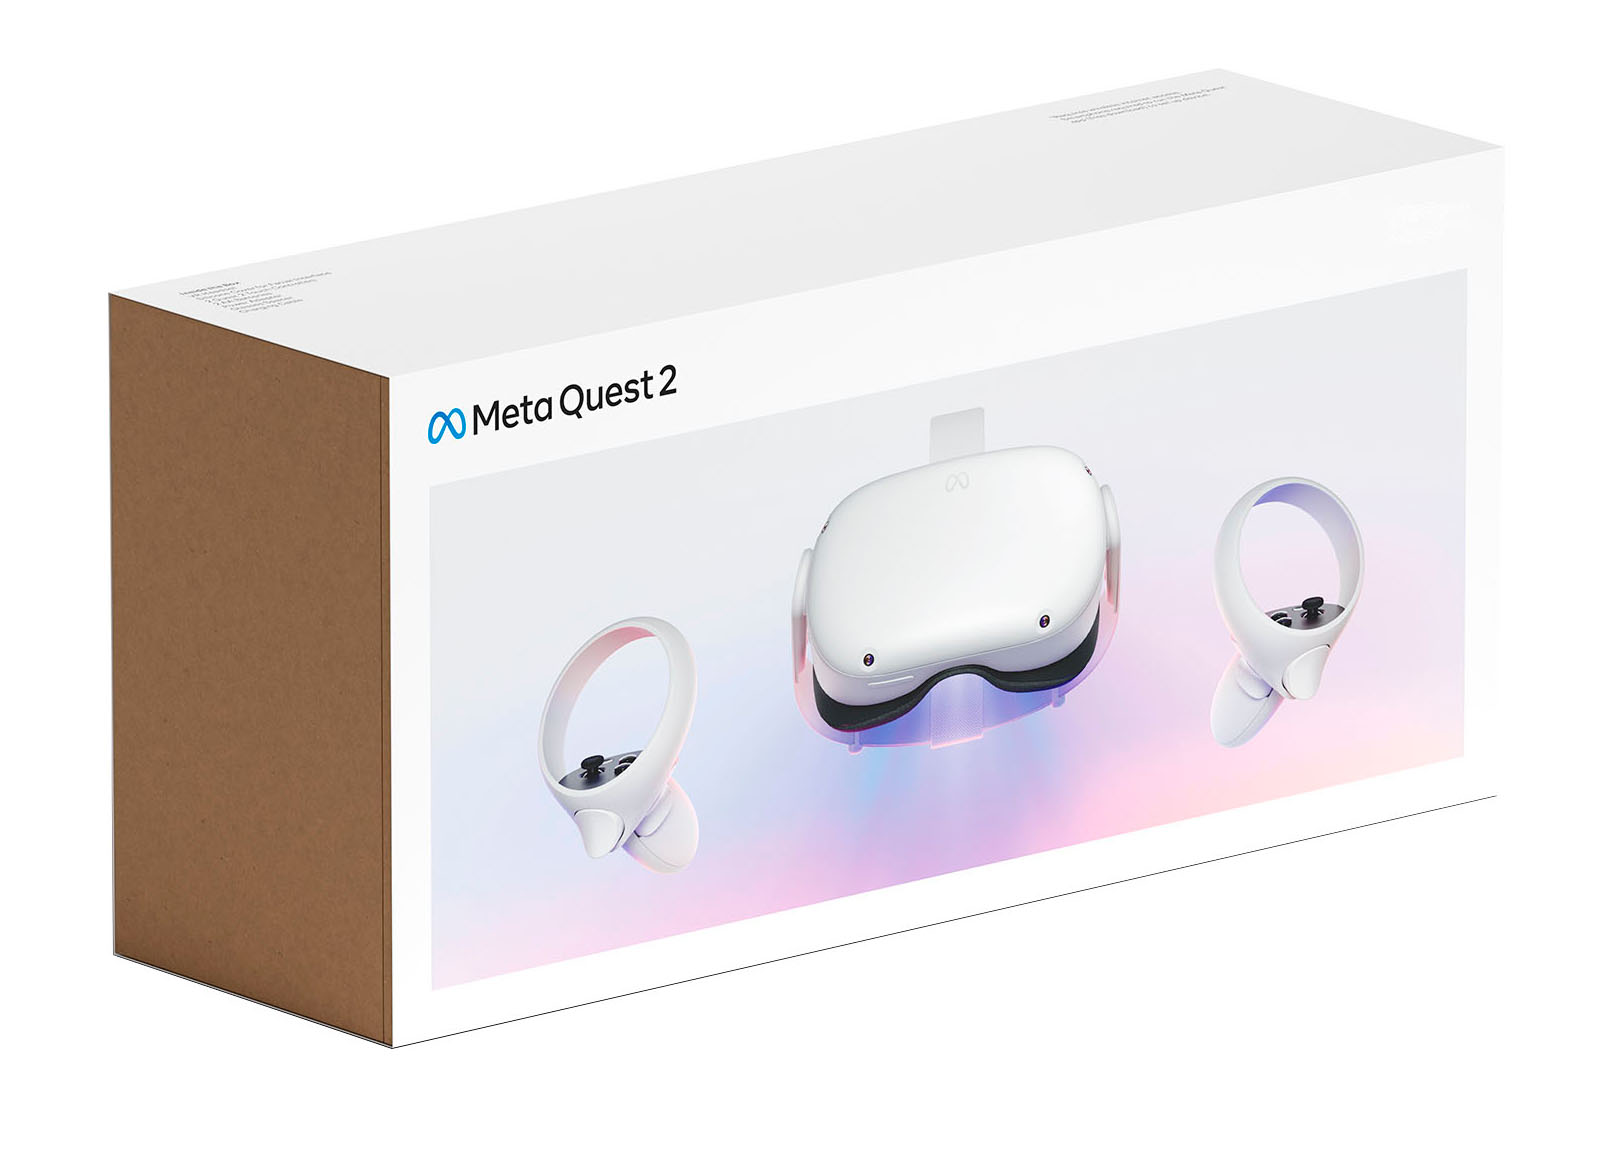 Oculus Quest2 64GB 家庭用ゲーム本体 テレビゲーム 本・音楽・ゲーム 登場!